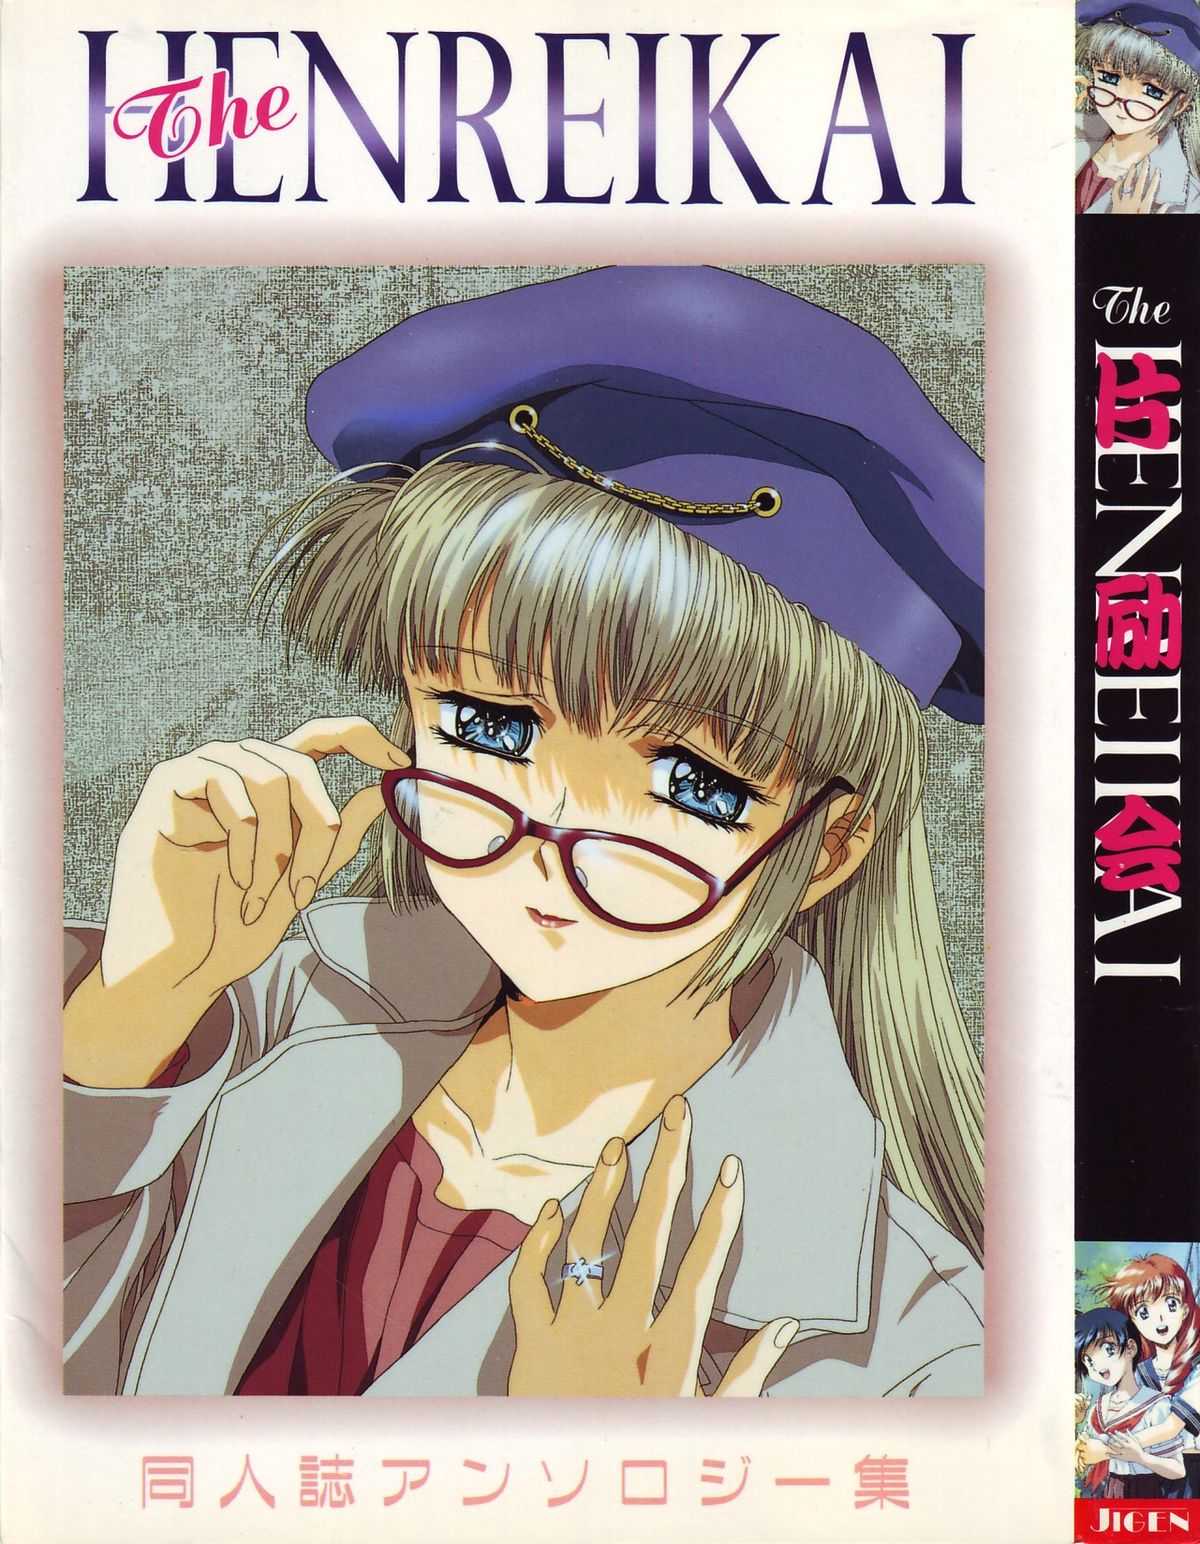 [Anthology] The Henreikai (Evangelion) 